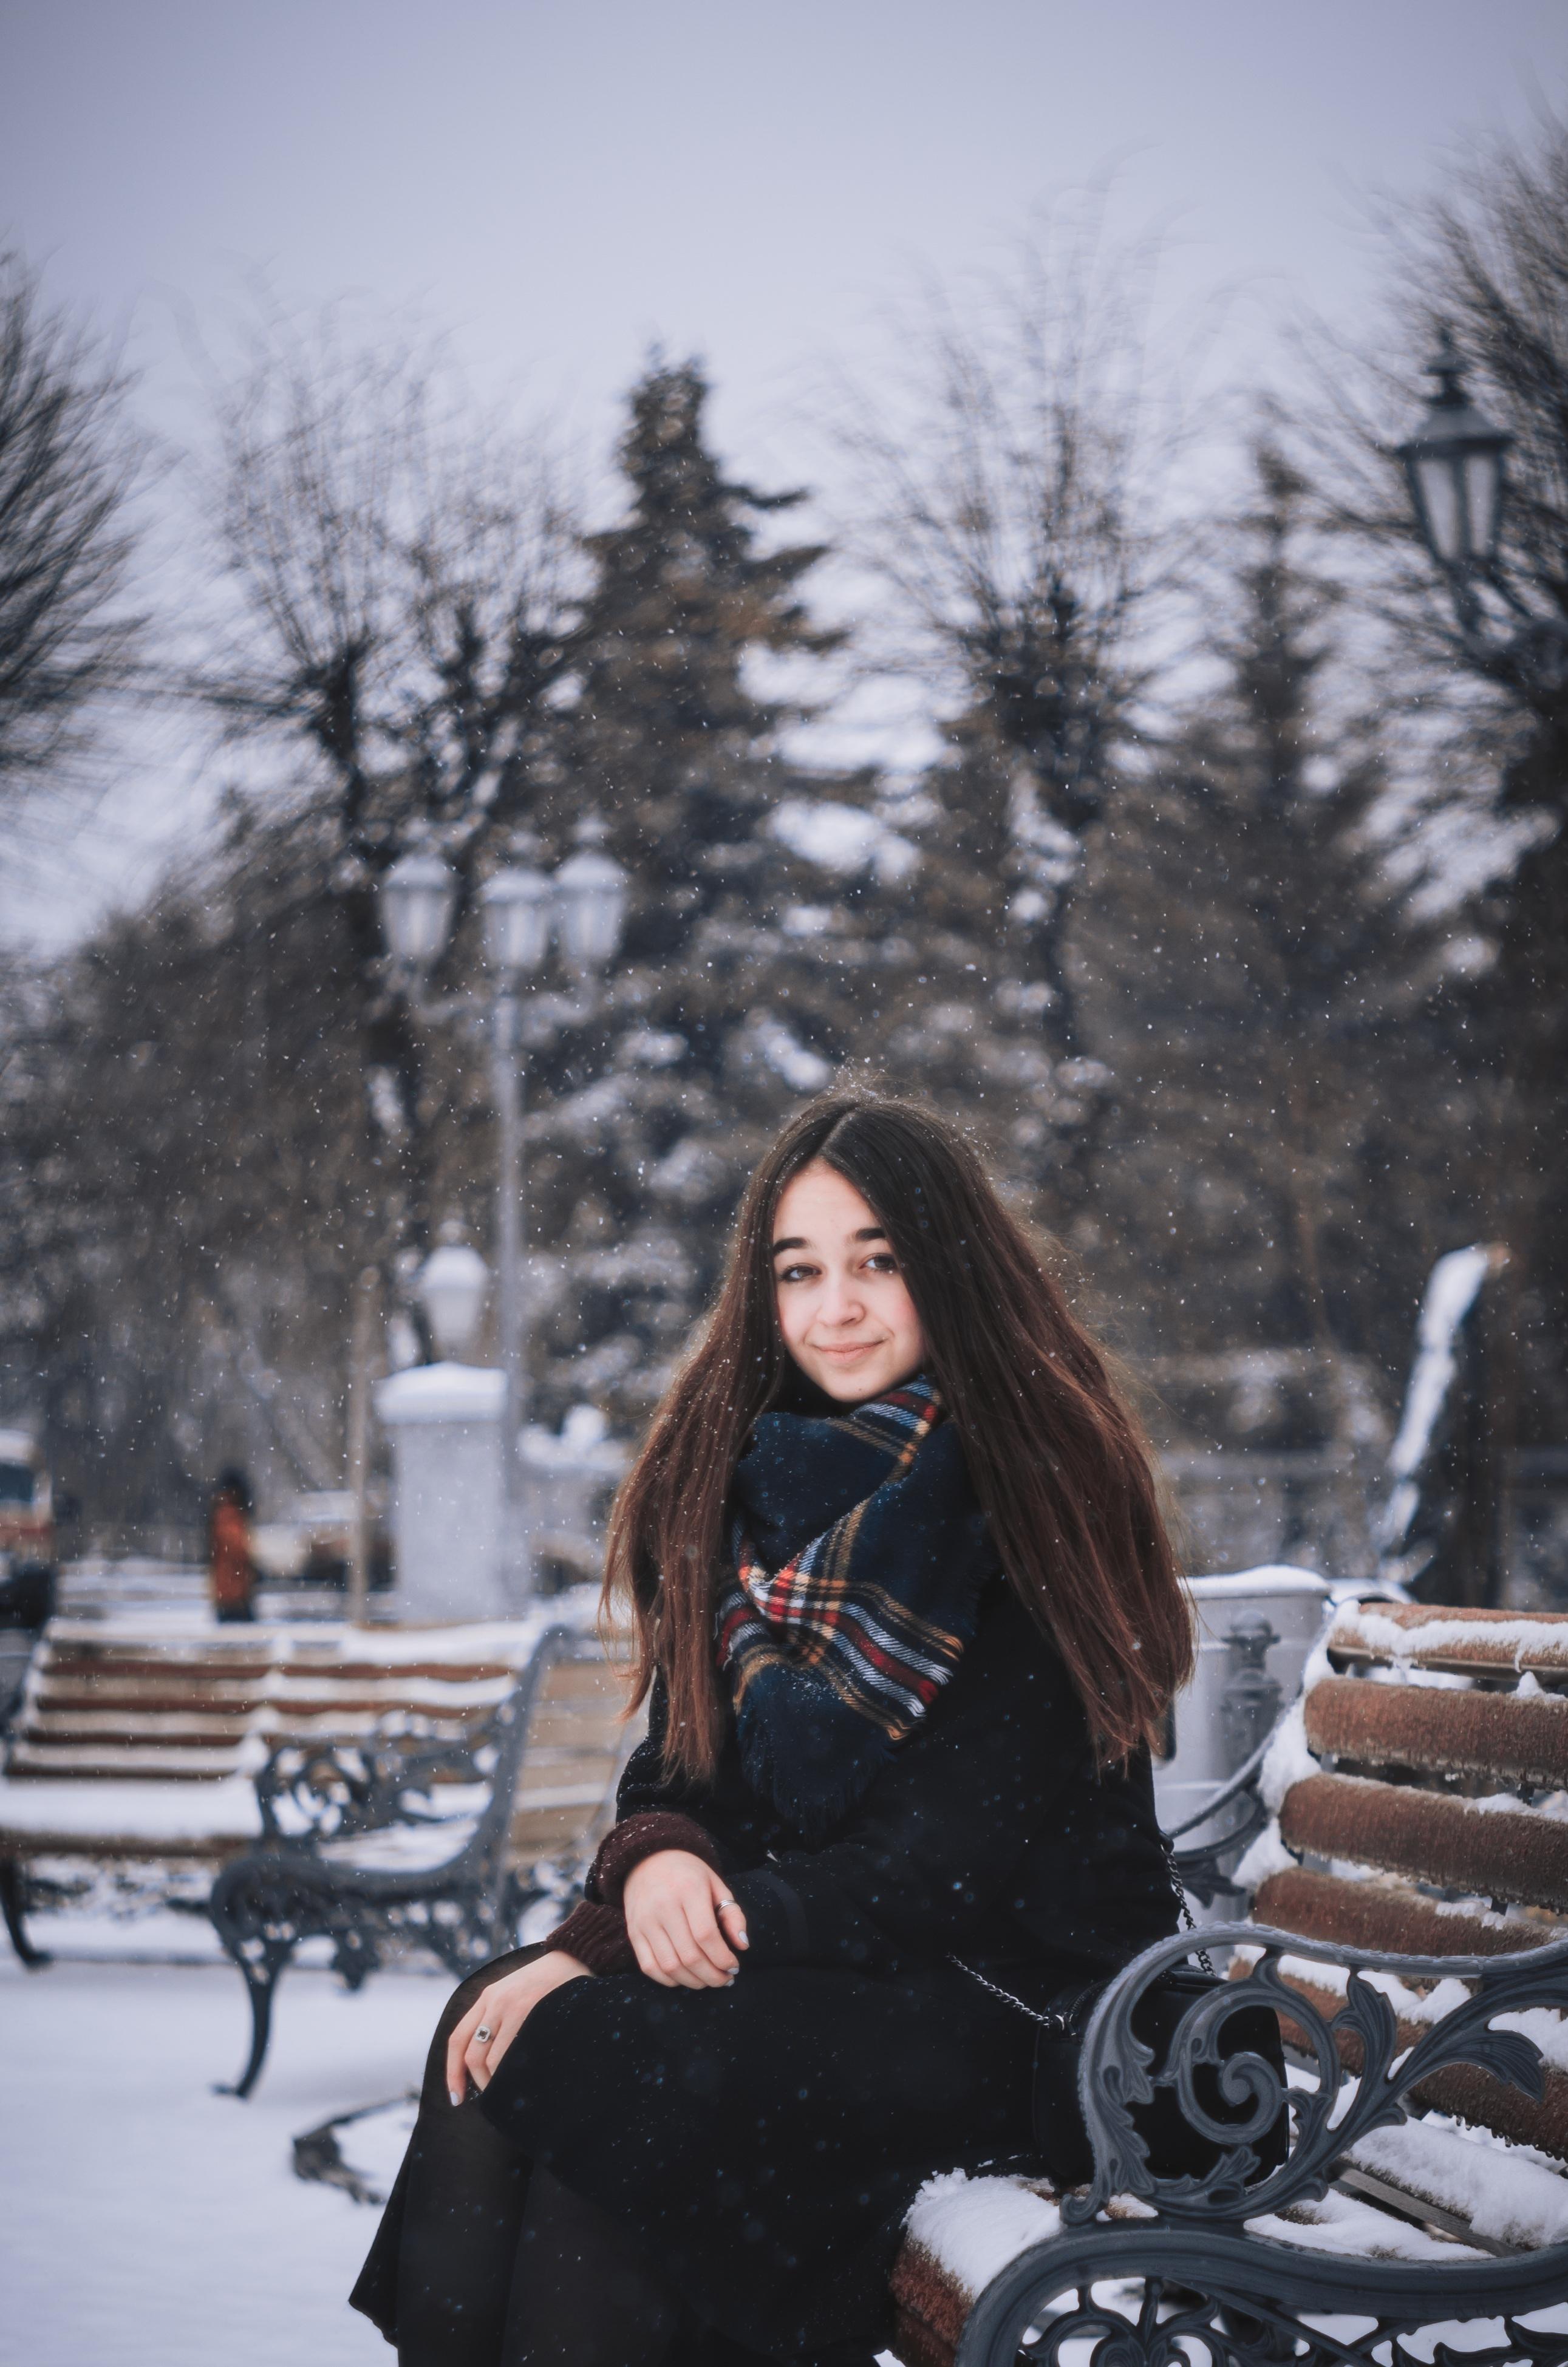 Зимой девушки особенно красивы от Круэлла за 03.12.2014 на Fishki.net